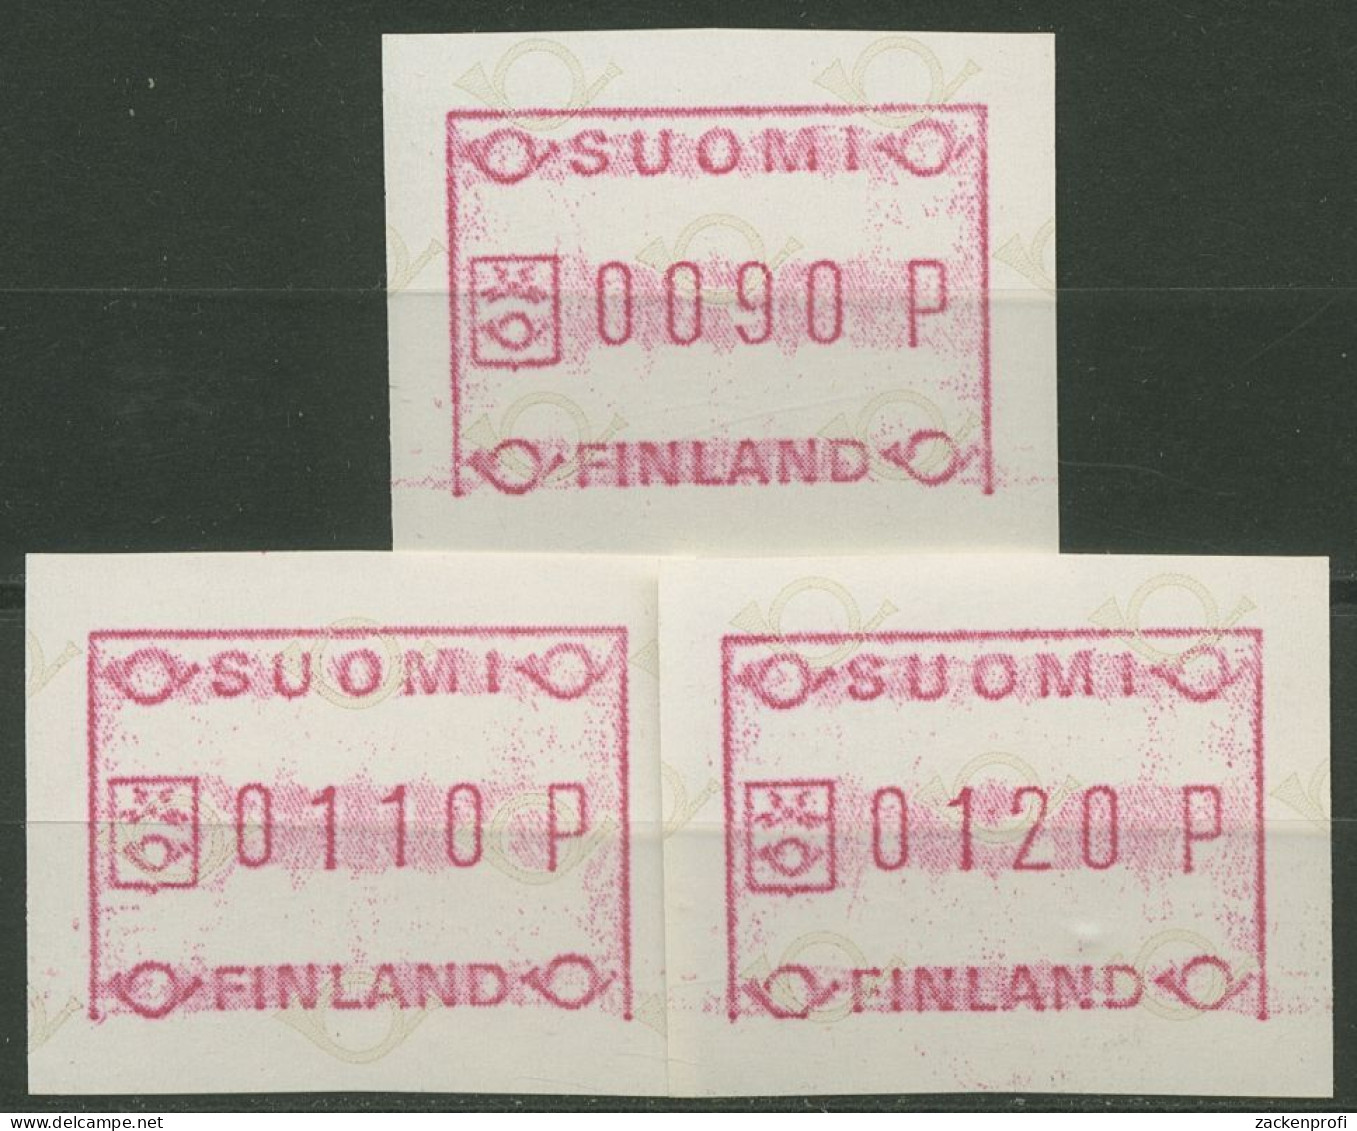 Finnland ATM 1982 Kl. Posthörner Grundlinie Fehlt Satz ATM 1.1 IV S 1 Postfrisch - Vignette [ATM]